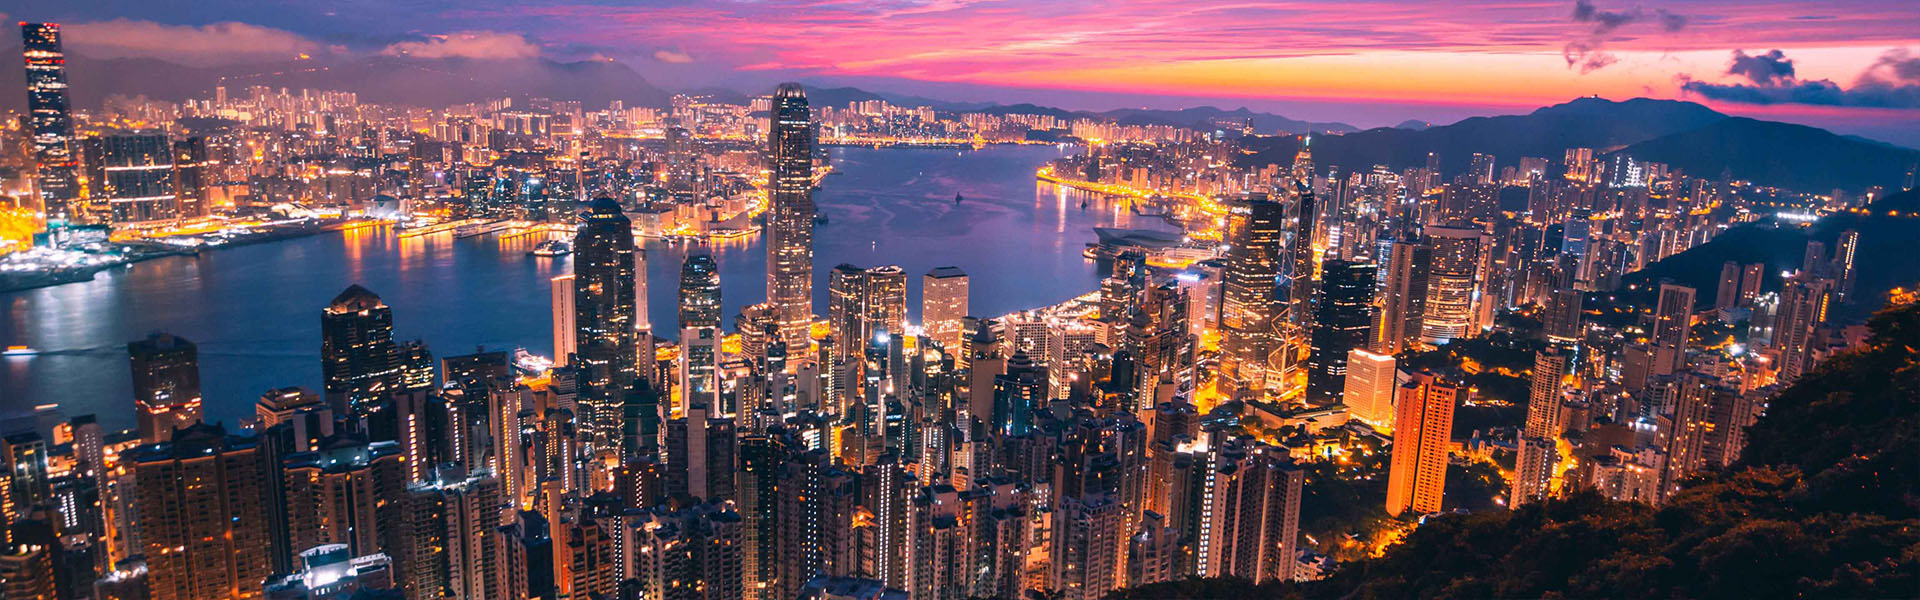 Kinh nghiệm du lịch Hong Kong tự túc, khám phá trọn vẹn vẻ đẹp của xứ Cảng Thơm